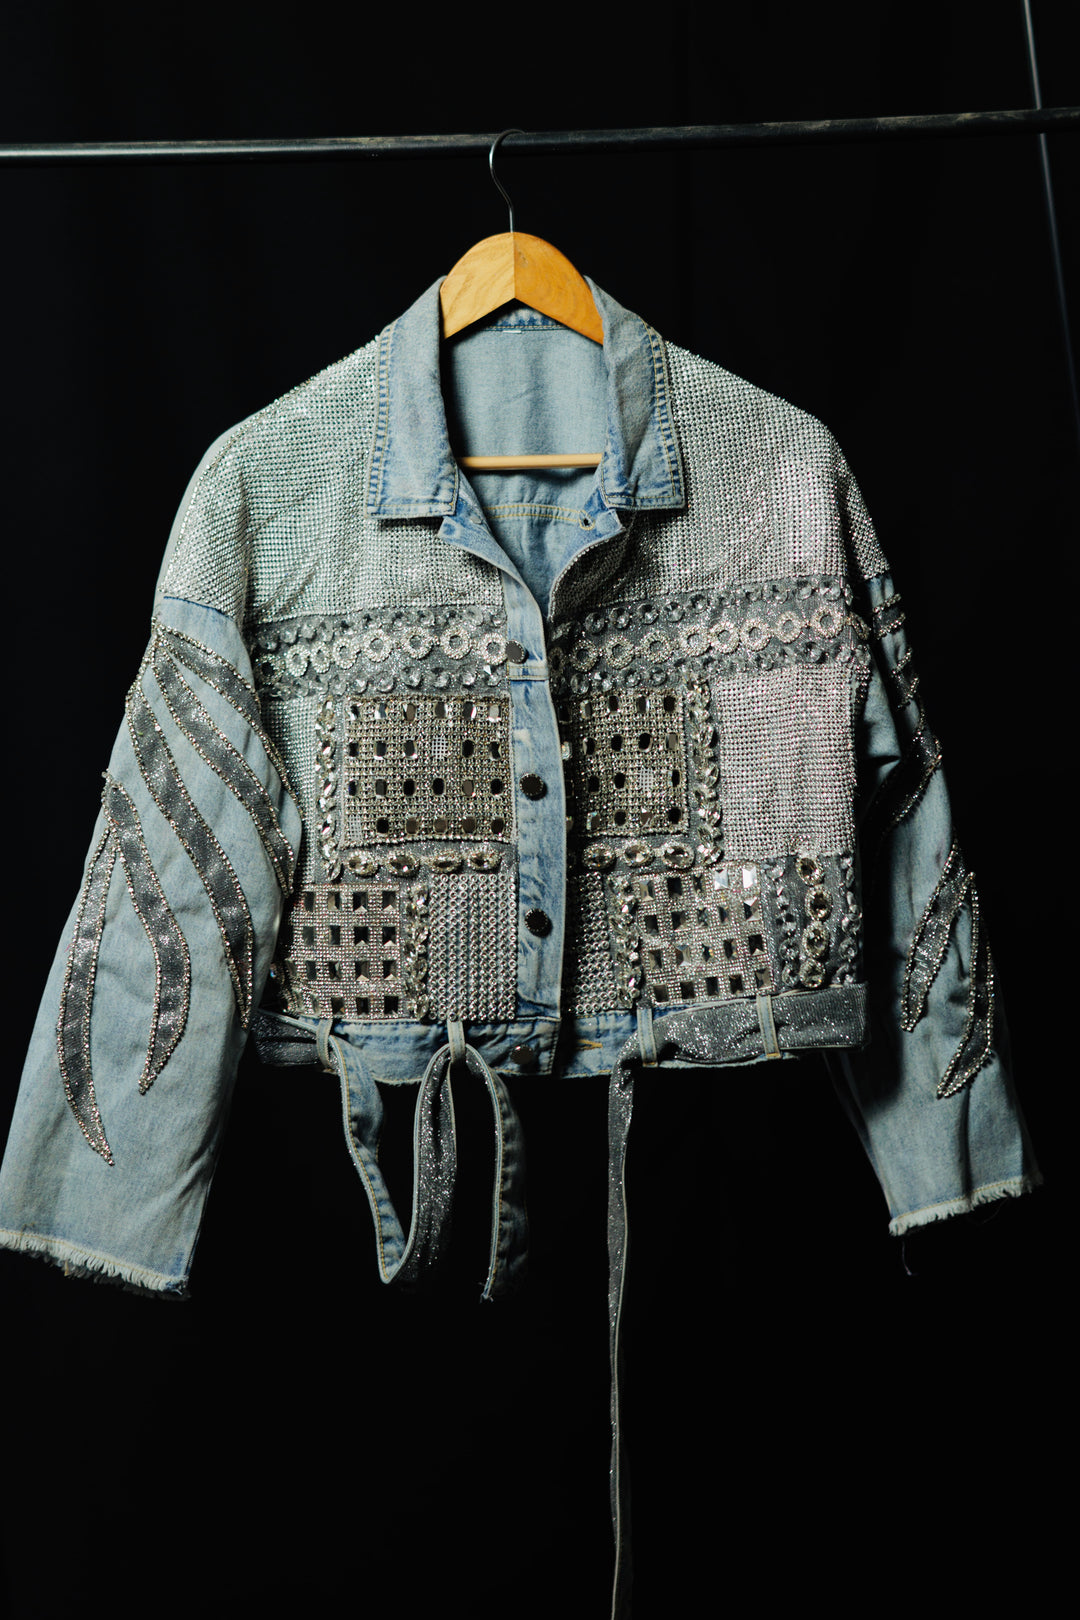 Rhinestone Bling jacket